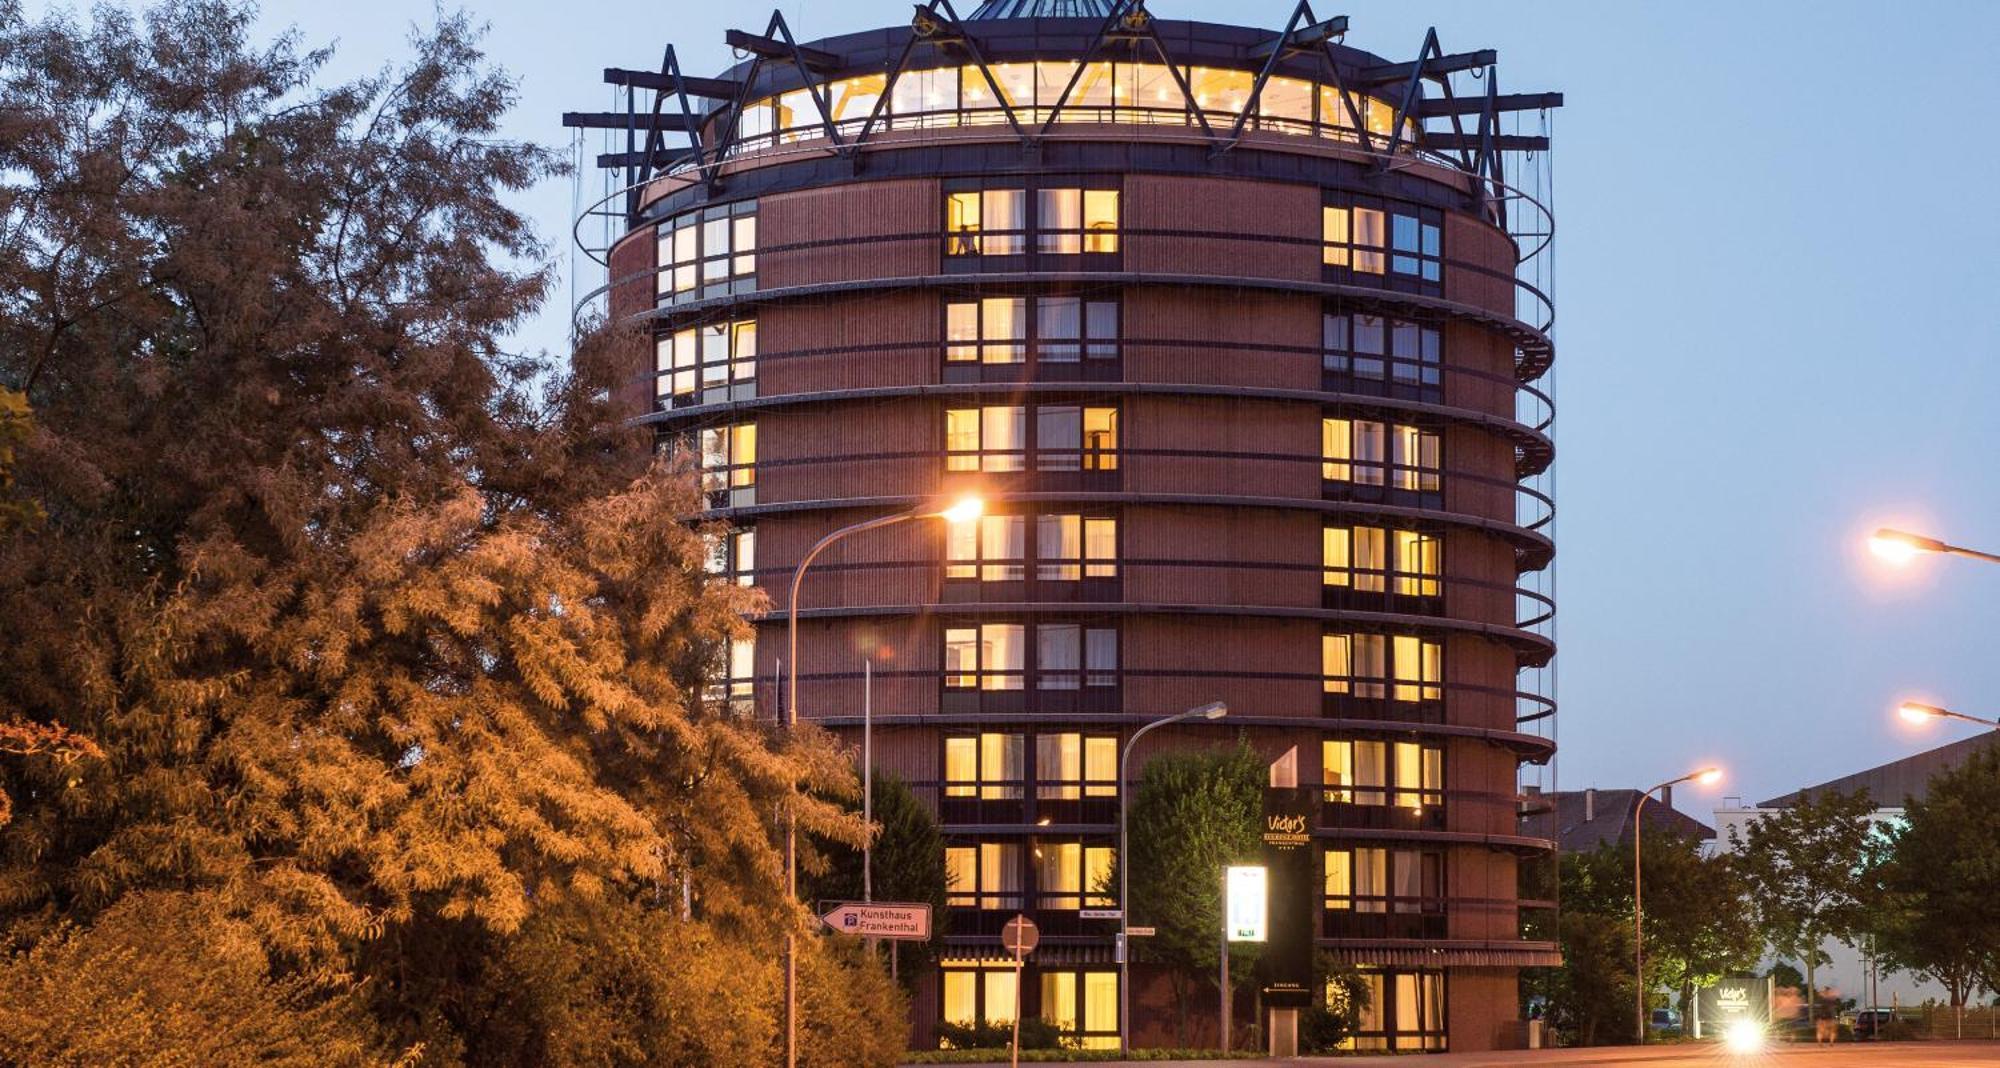 פרנקנטל Victor'S Residenz-Hotel Frankenthal מראה חיצוני תמונה